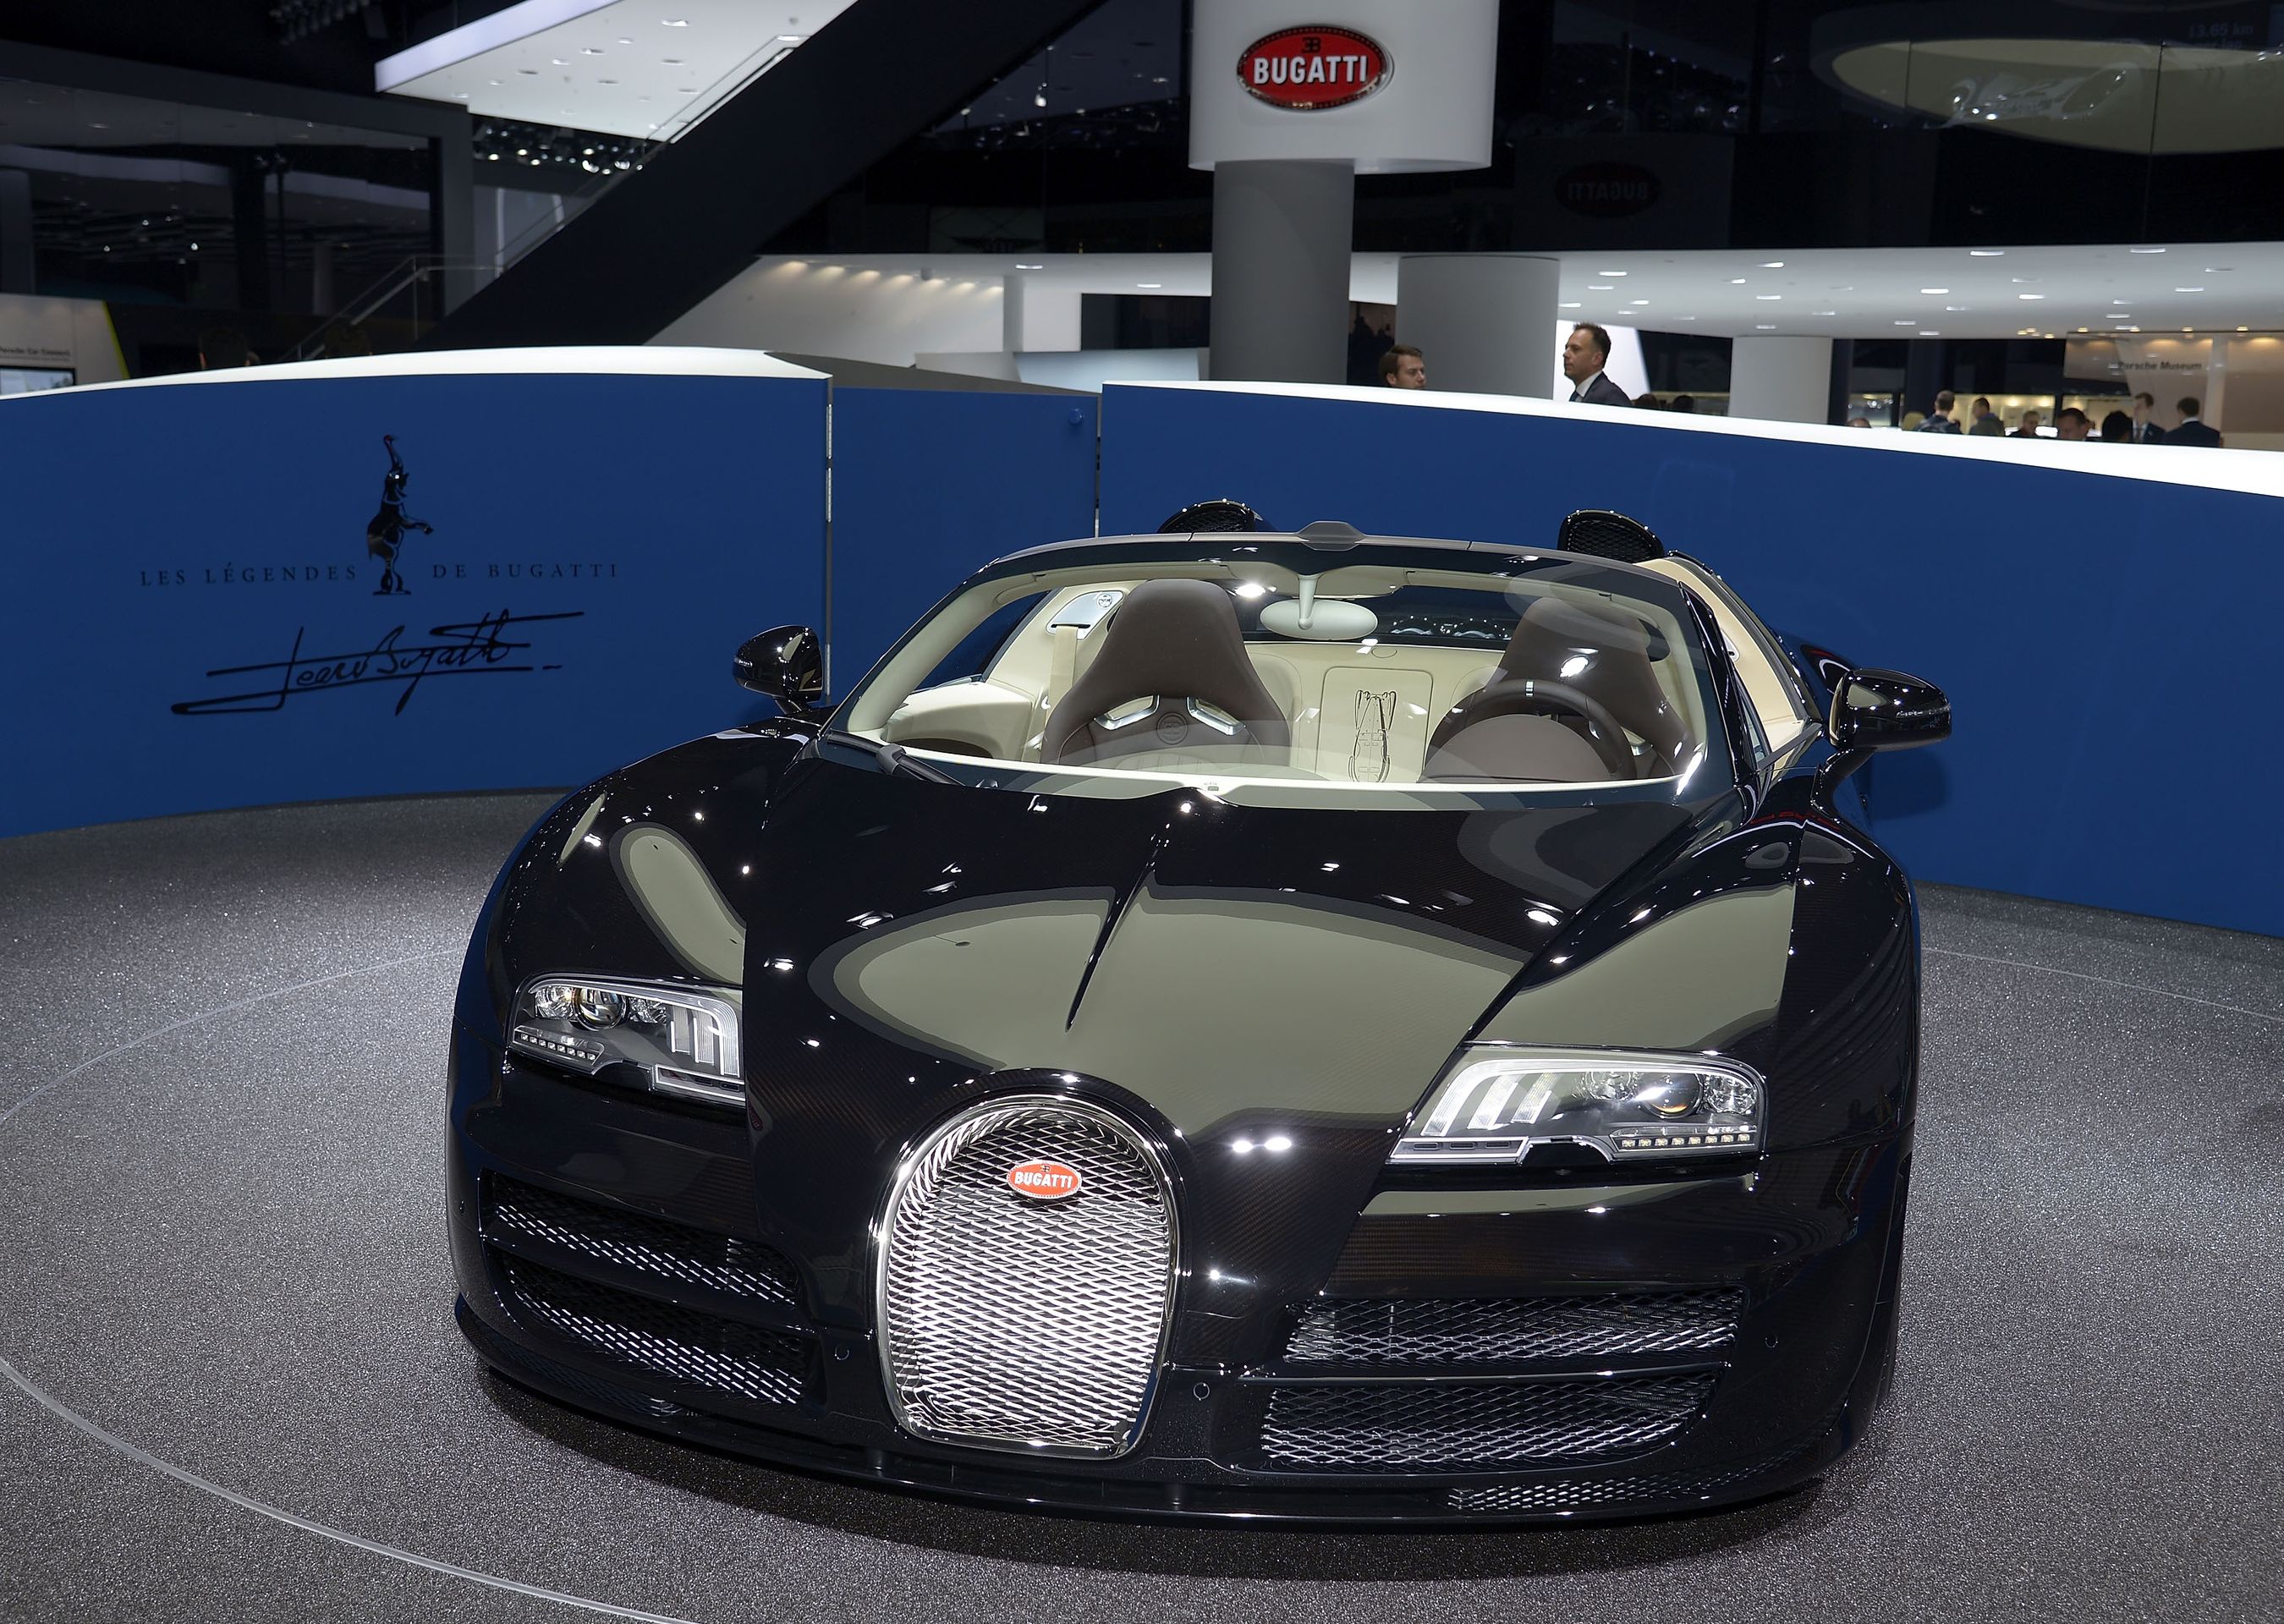 Bugatti - GALERIE: Auta představená na autosalonu ve Frankfurtu (4/20)